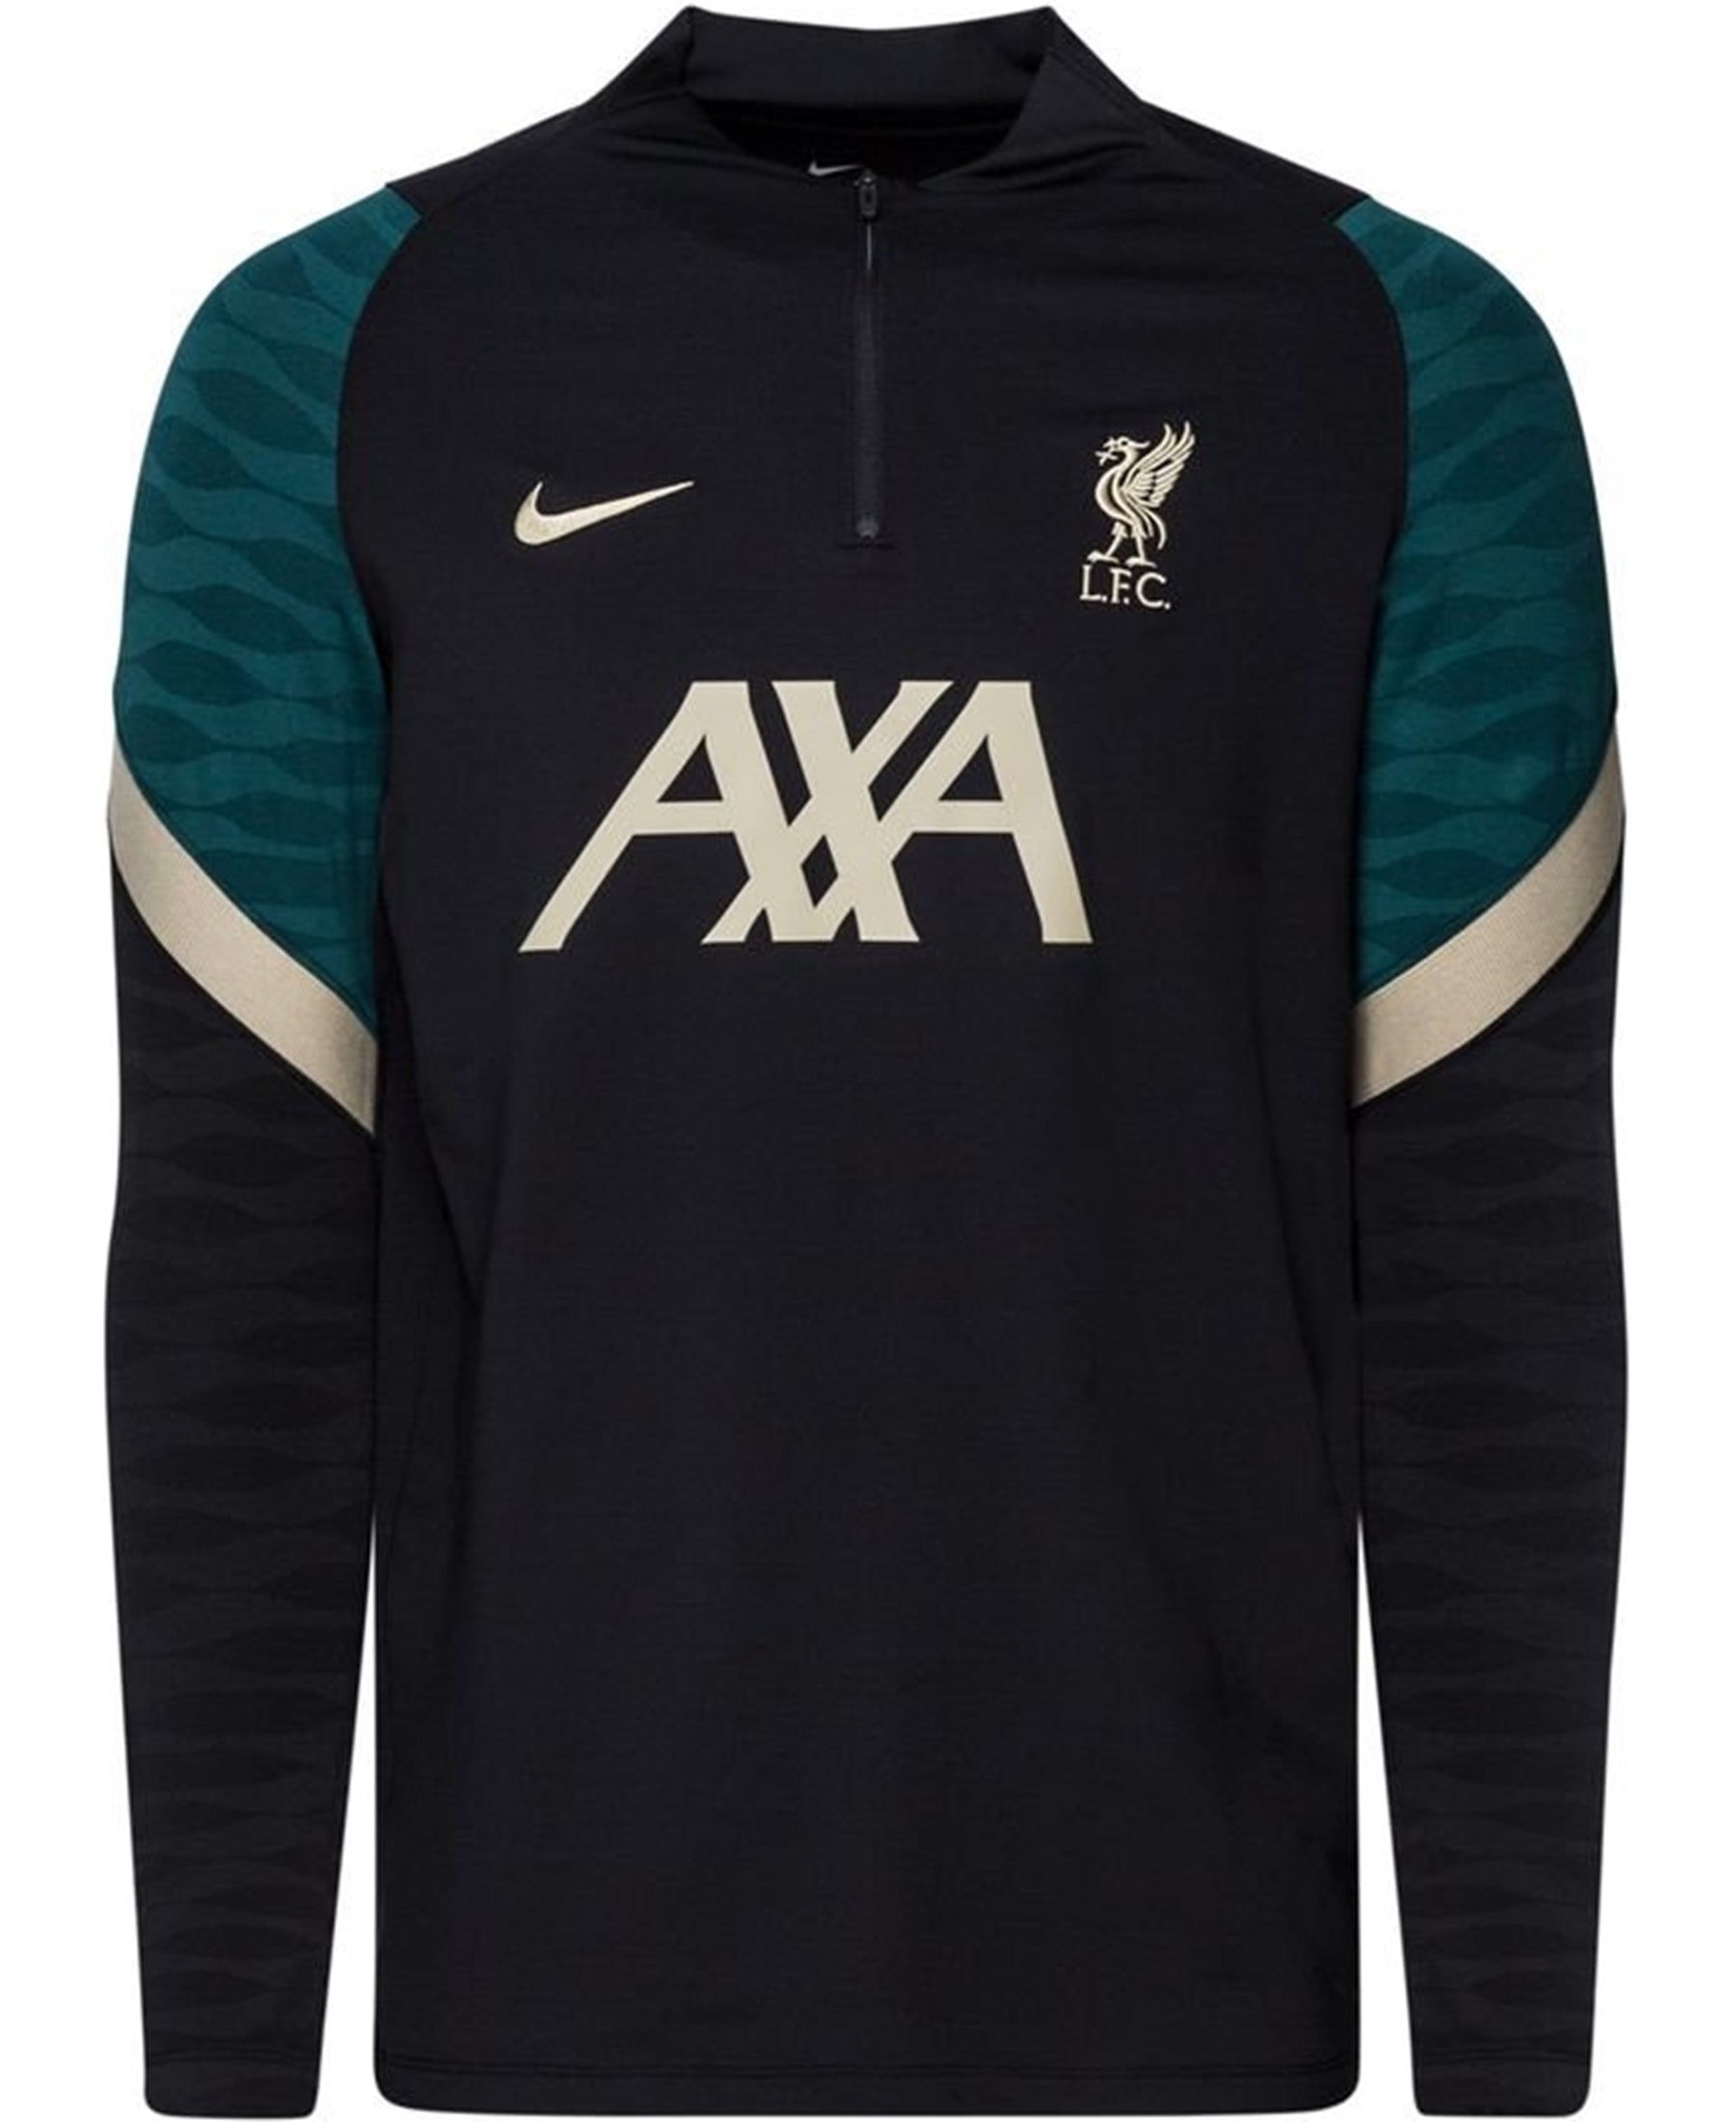 Das Nike FC Liverpool LFC Half-Zip Strike Drill Sweatshirt (DB0237-011) ist die ideale Wahl für alle Liverpool-Fans. Mit seinem herausragenden Design und hochwertigen Materialien bietet es sowohl Stil als auch Komfort. Zeige deine Unterstützung für Liverpool in der kommenden Saison und sei bestens gekleidet. Erwerbe dieses großartige Sweatshirt bei SHOP4TEAMSPORT – deinem Shop für Fußballbekleidung und Accessoires.